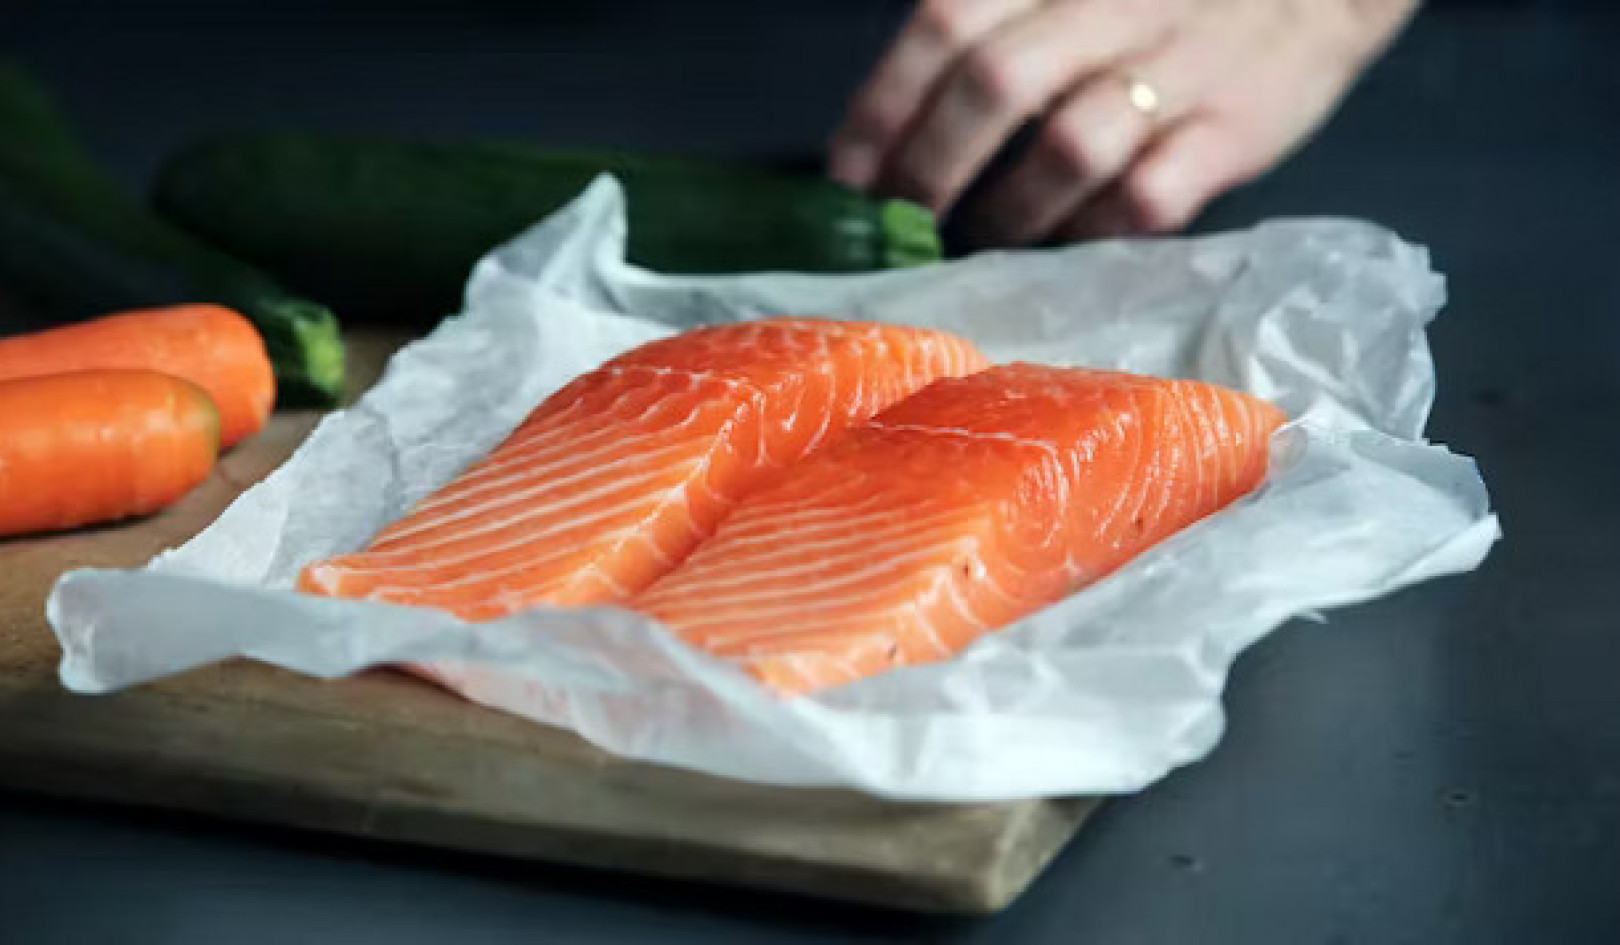 ข้อเท็จจริงน้ำมันปลา: อาหารเสริมมีประโยชน์พอๆ กับการรับประทานปลาหรือไม่?